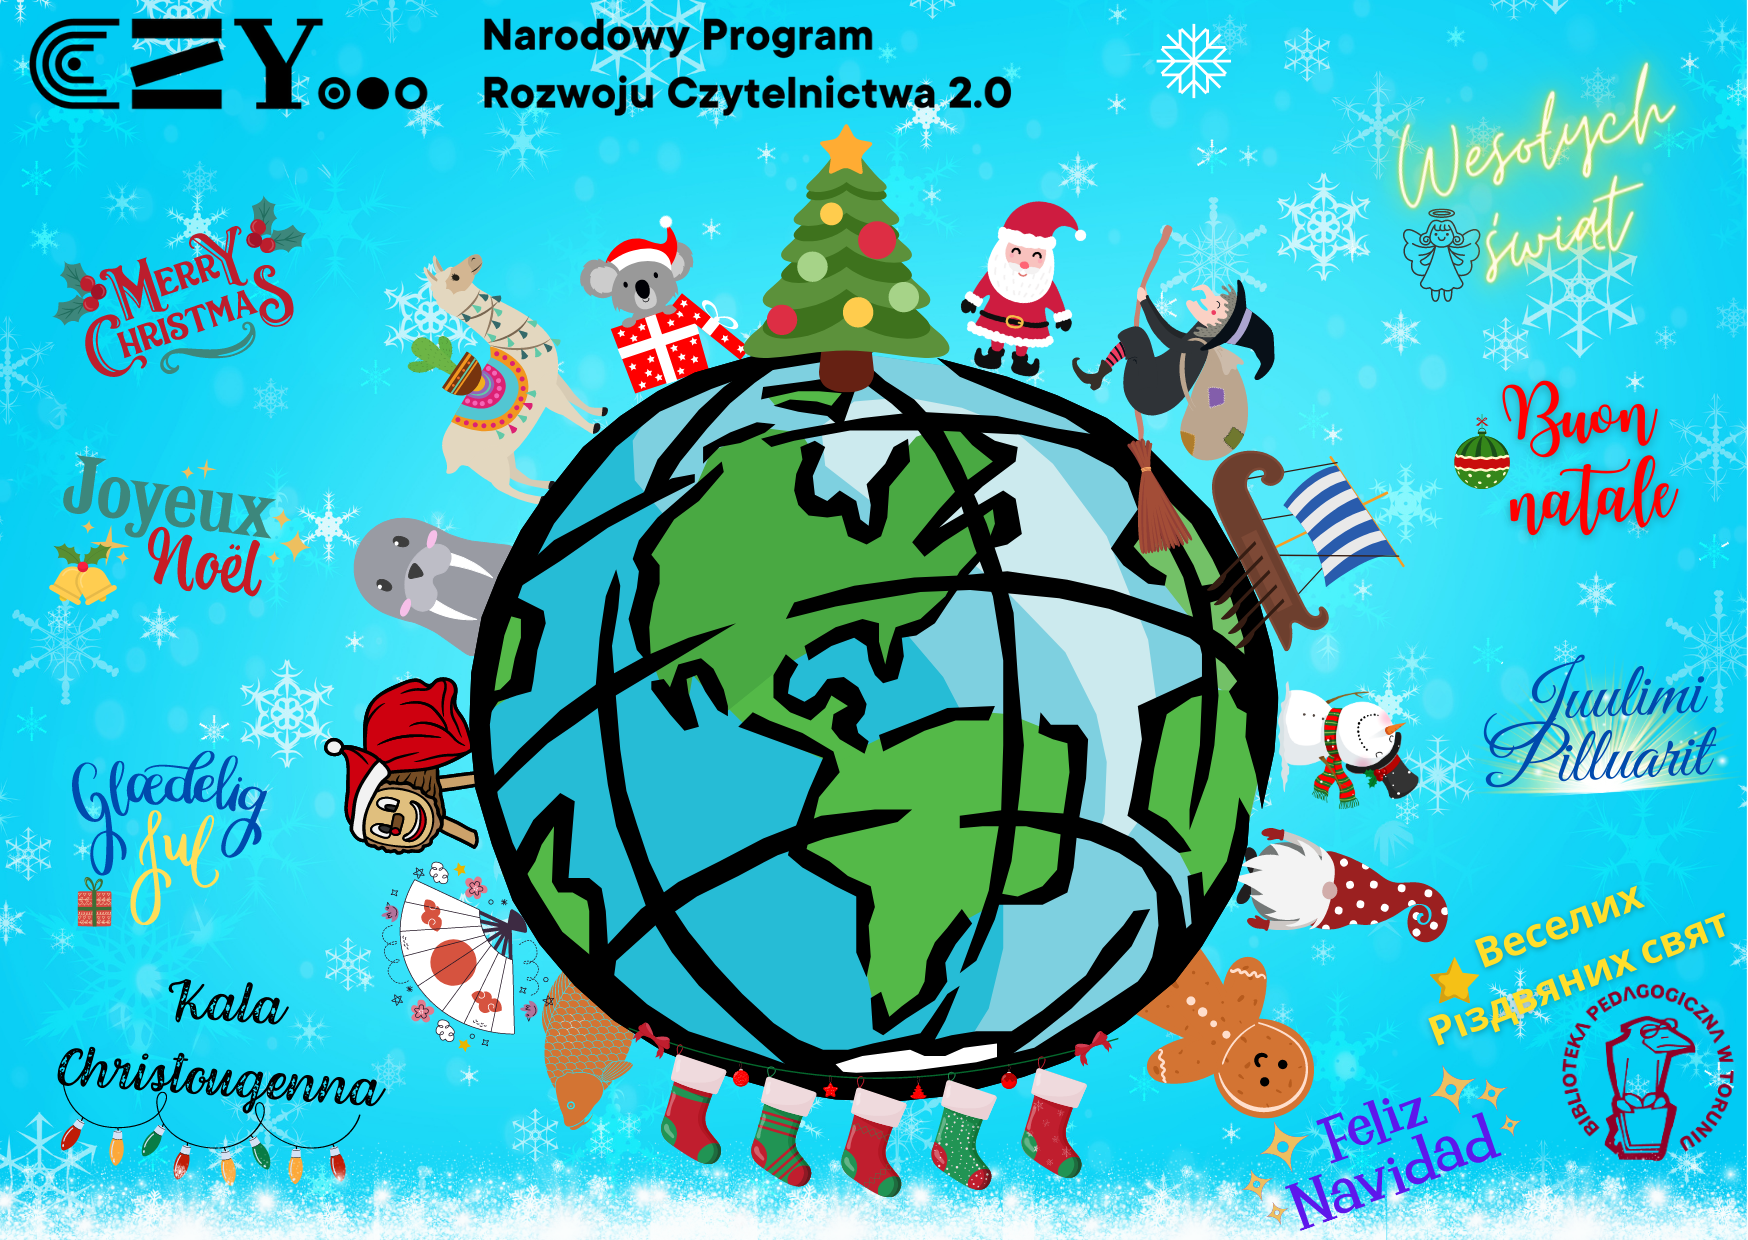 Na niebieskim tle kula ziemska, wokół kolorowe postaci, życzenia świąteczne w różnych językach. Na górze logotyp Narodowego Programu Rozwoju Czytelnictwa.